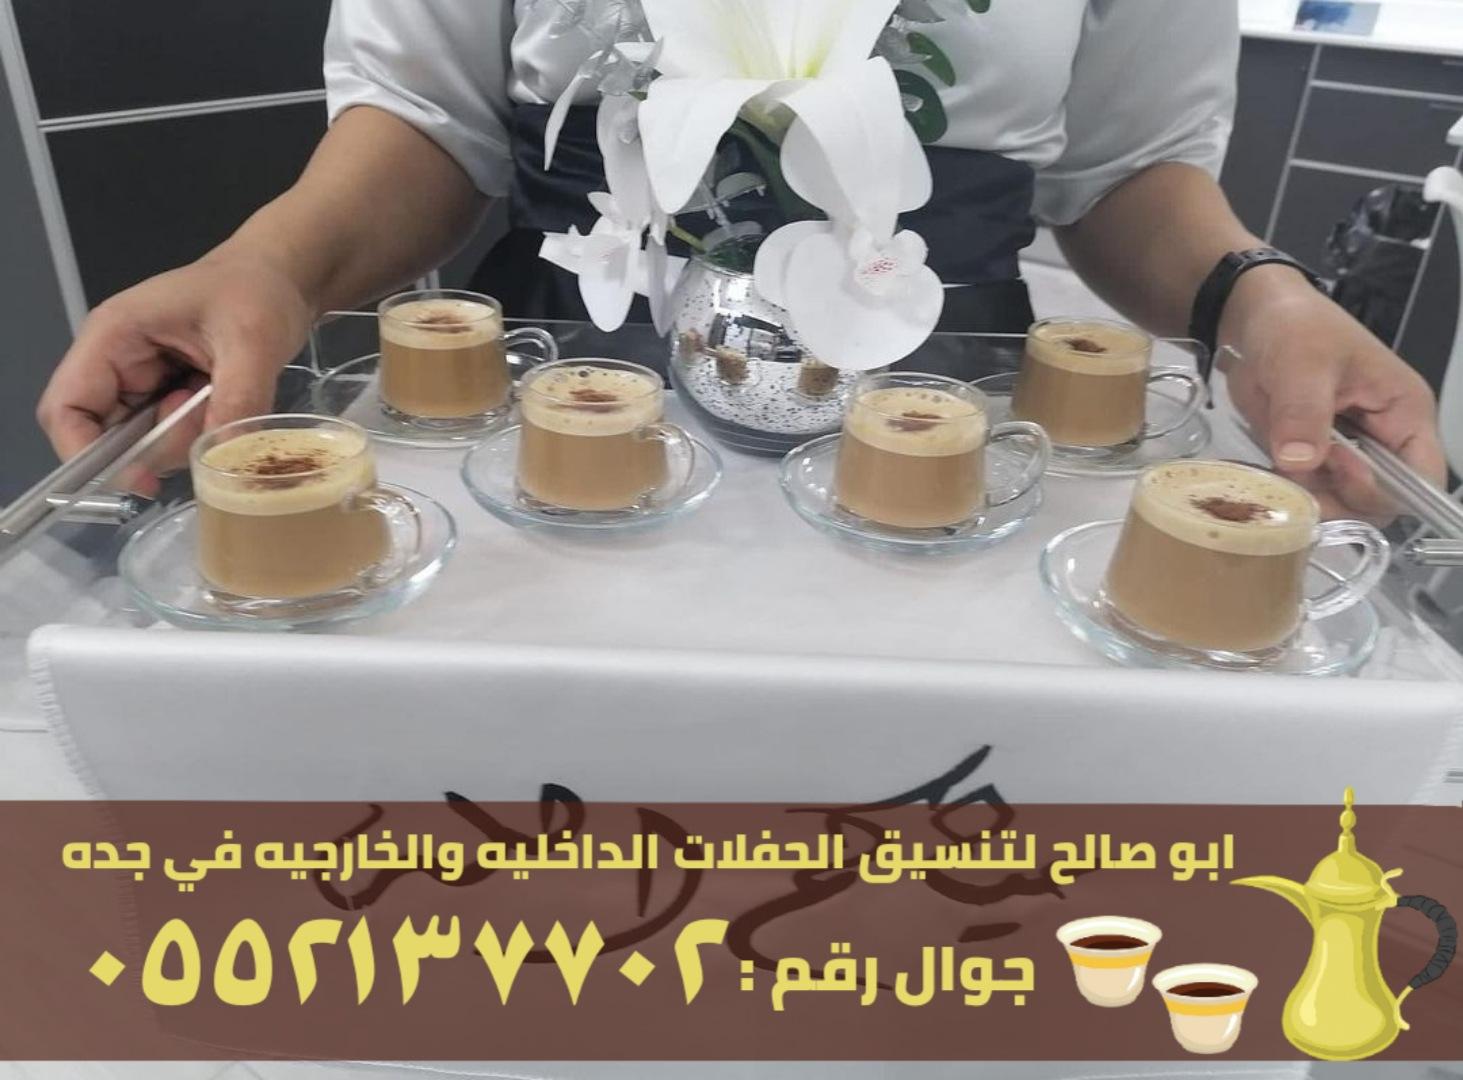 ضيافة قهوة و شاي في جدة,0552137702 906332654